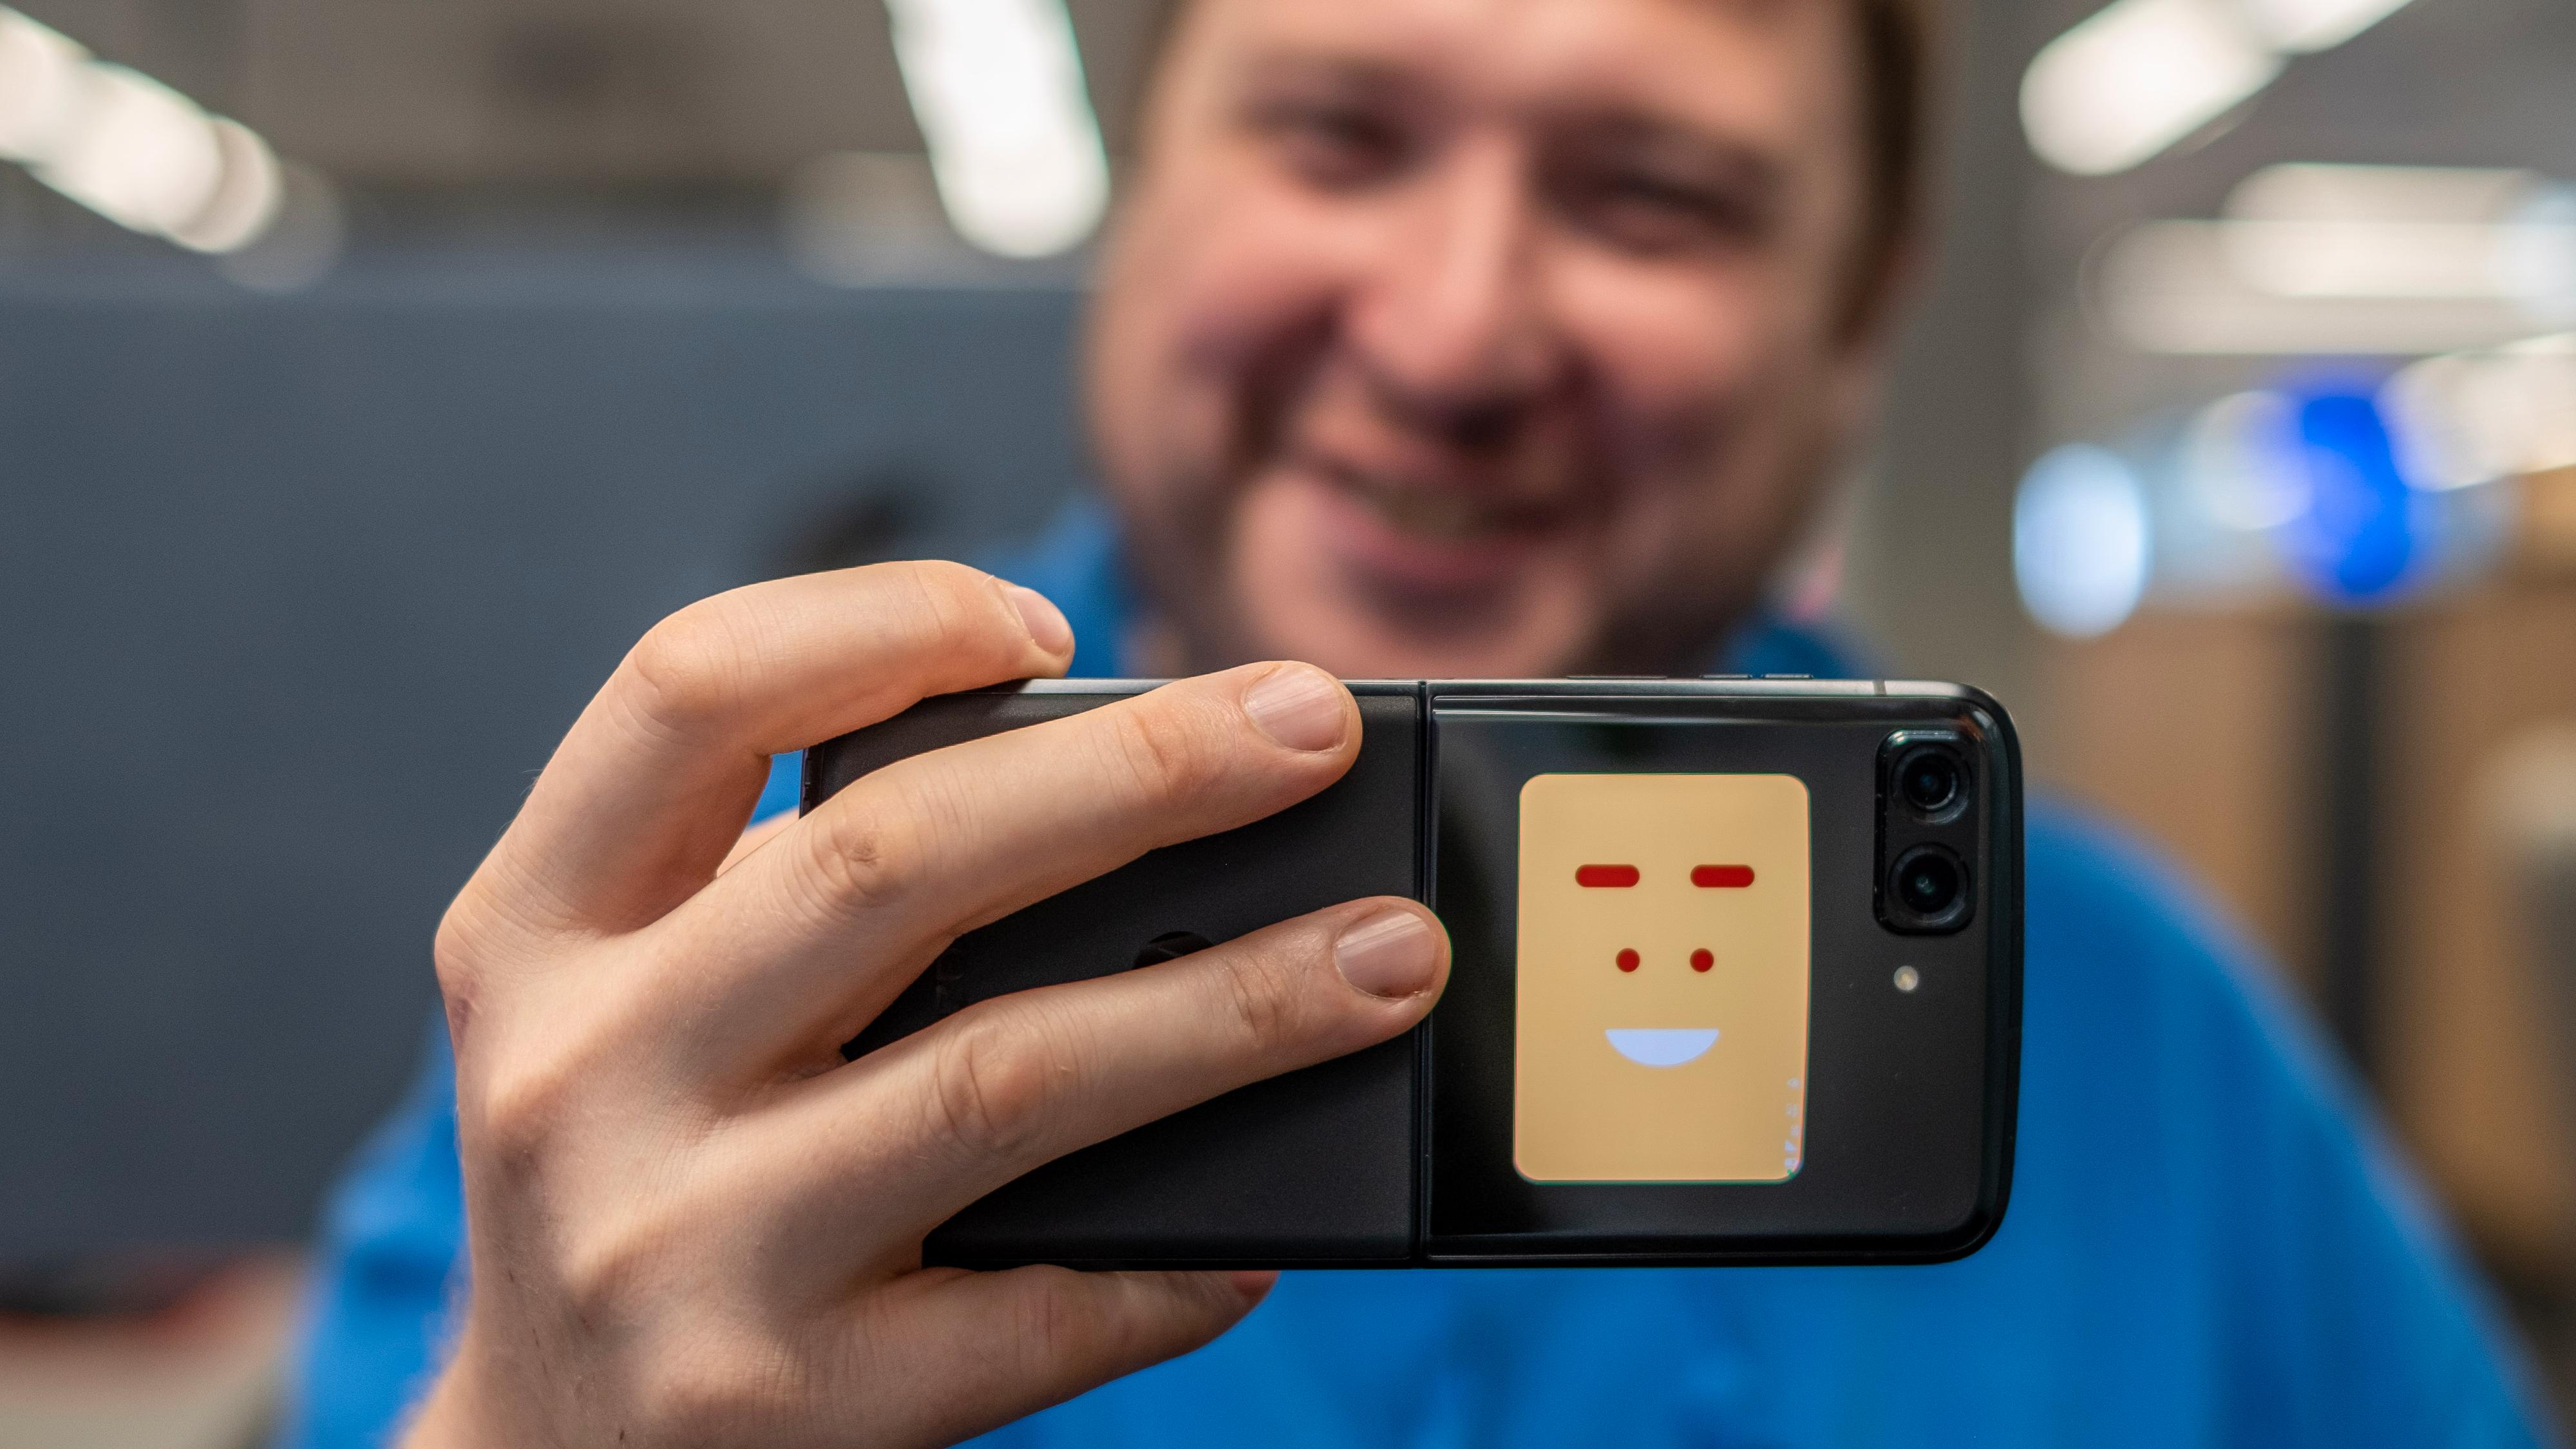 Telefonen kan vise den du fotograferer at den skal smile, eller så kan den forhåndsvise bildet du er i ferd med å ta.